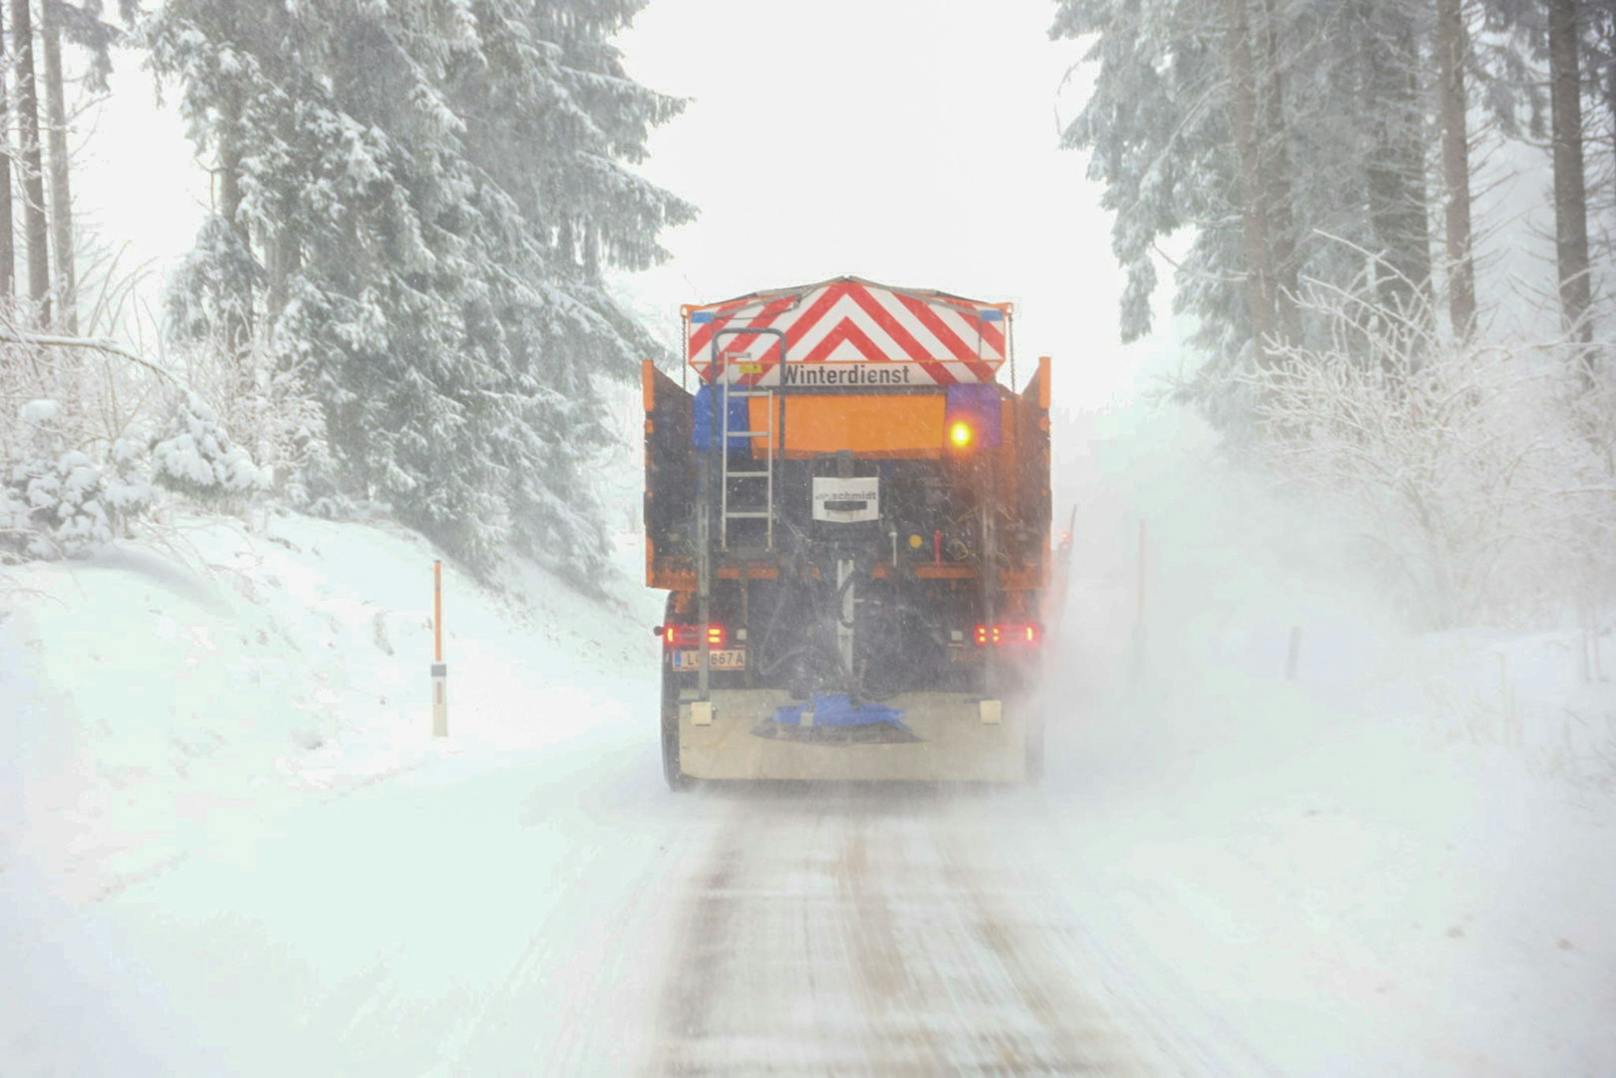 Totales Schnee-Chaos – Winterdienst im Dauereinsatz